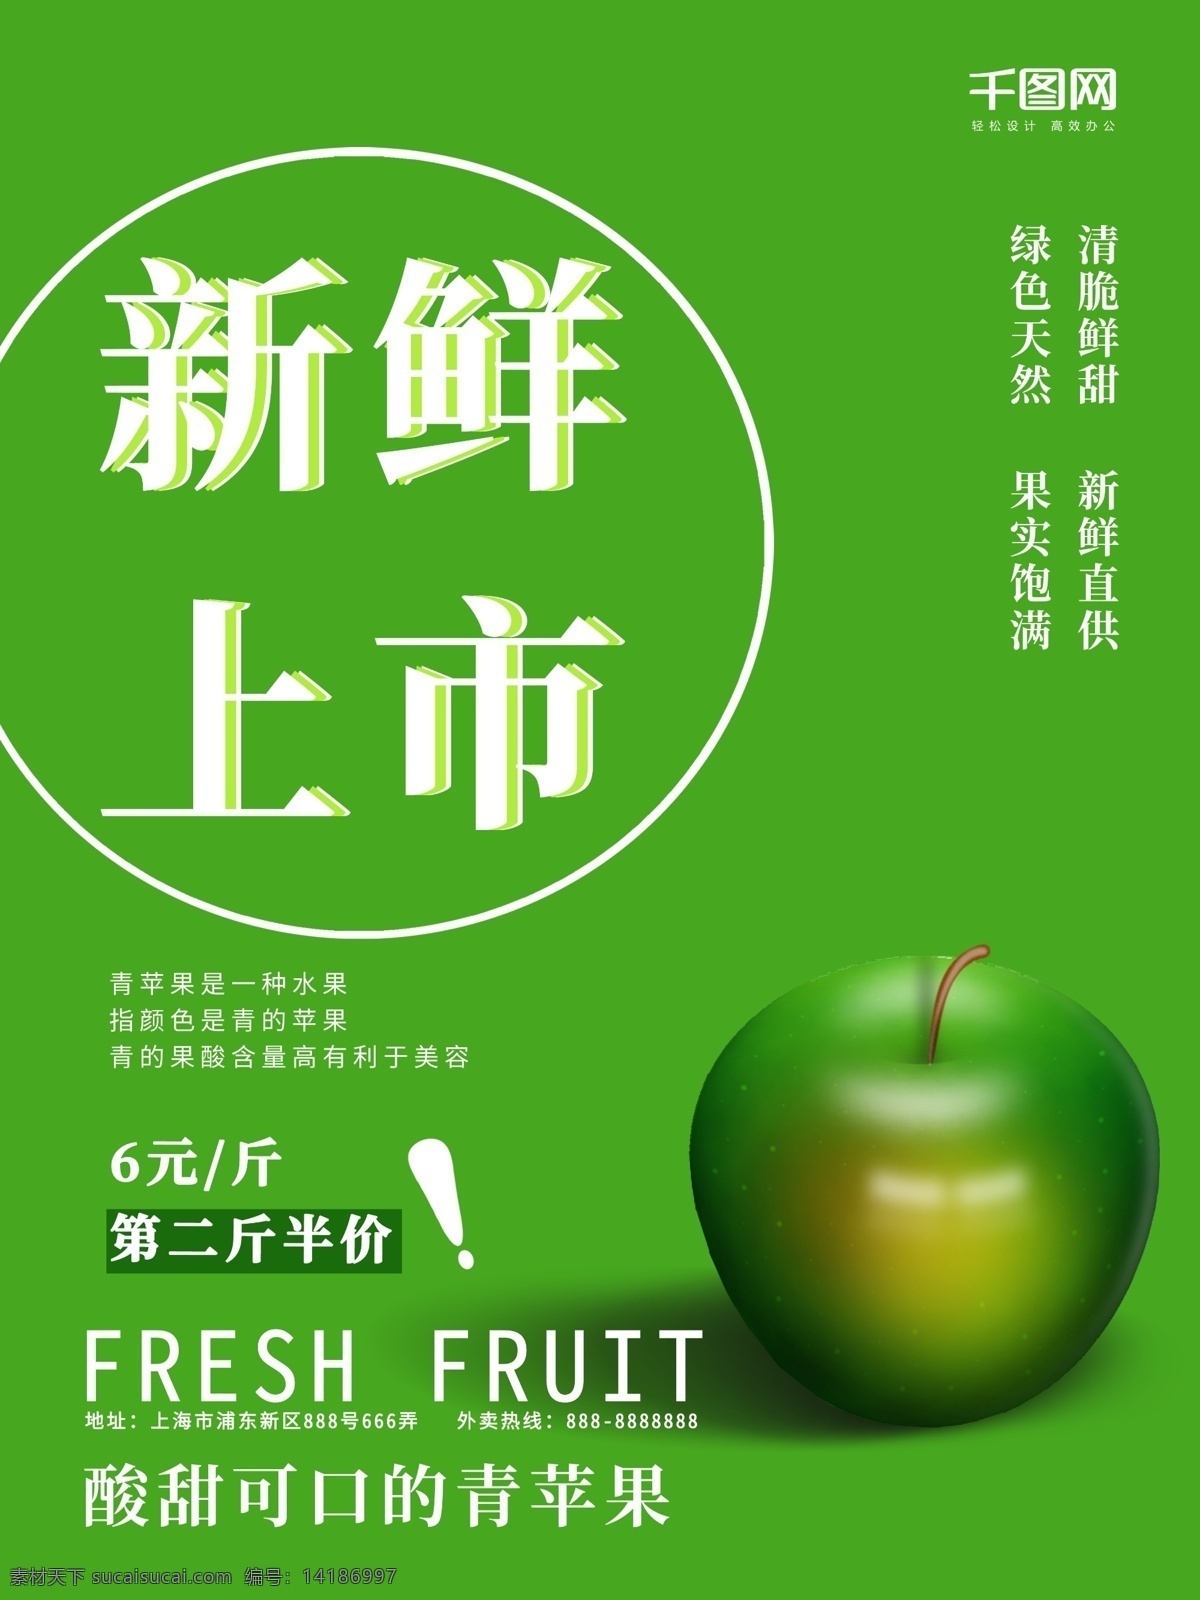 原创 简约 风 青苹果 新鲜 上市 海报 食物 水果 美容 果胶 果酸 半价 优惠